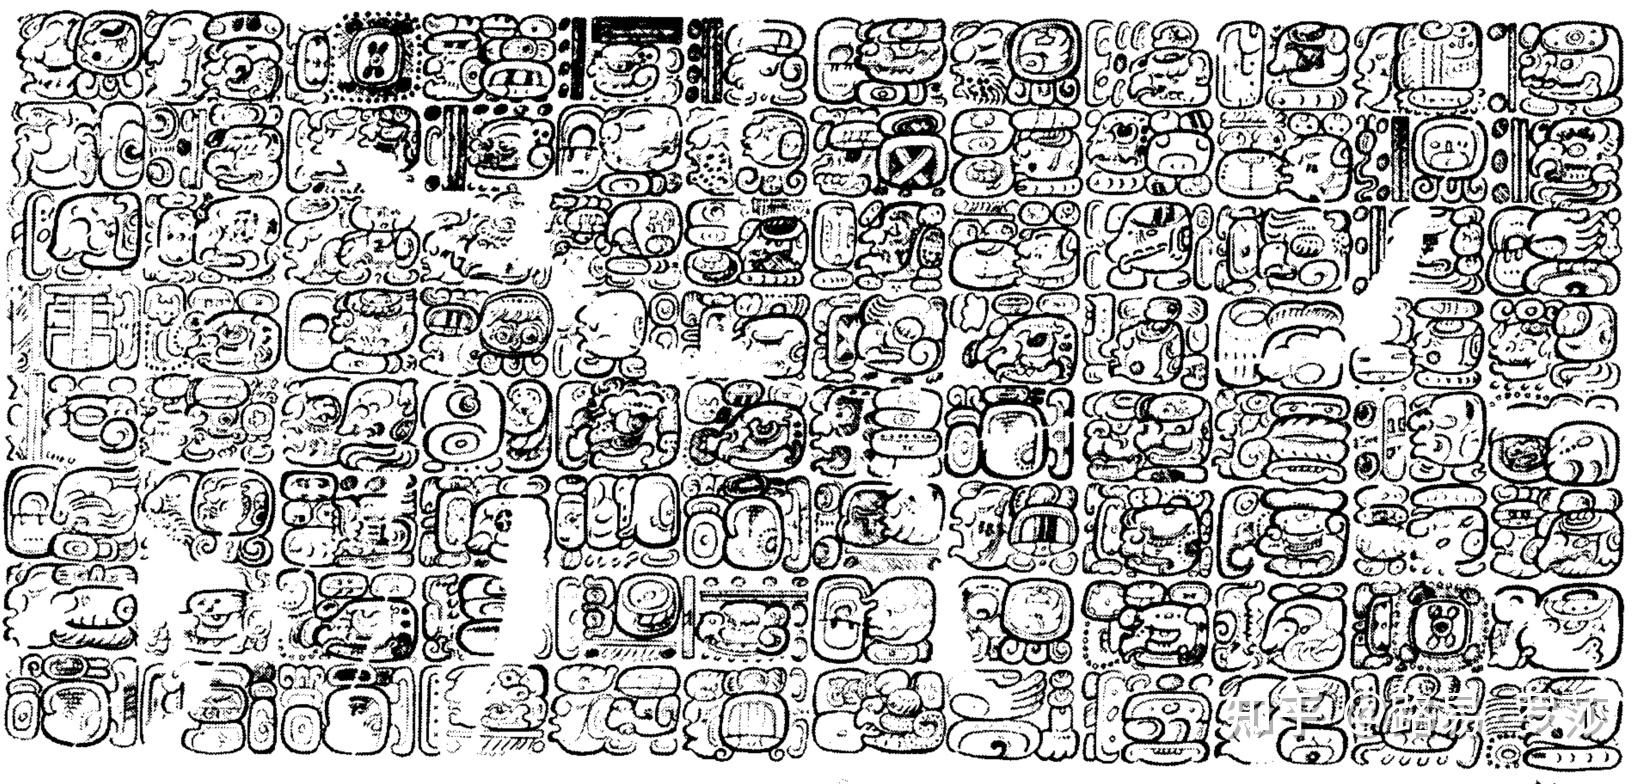 如果玛雅文字和语言一直使用至今会是什么模样伊察次元